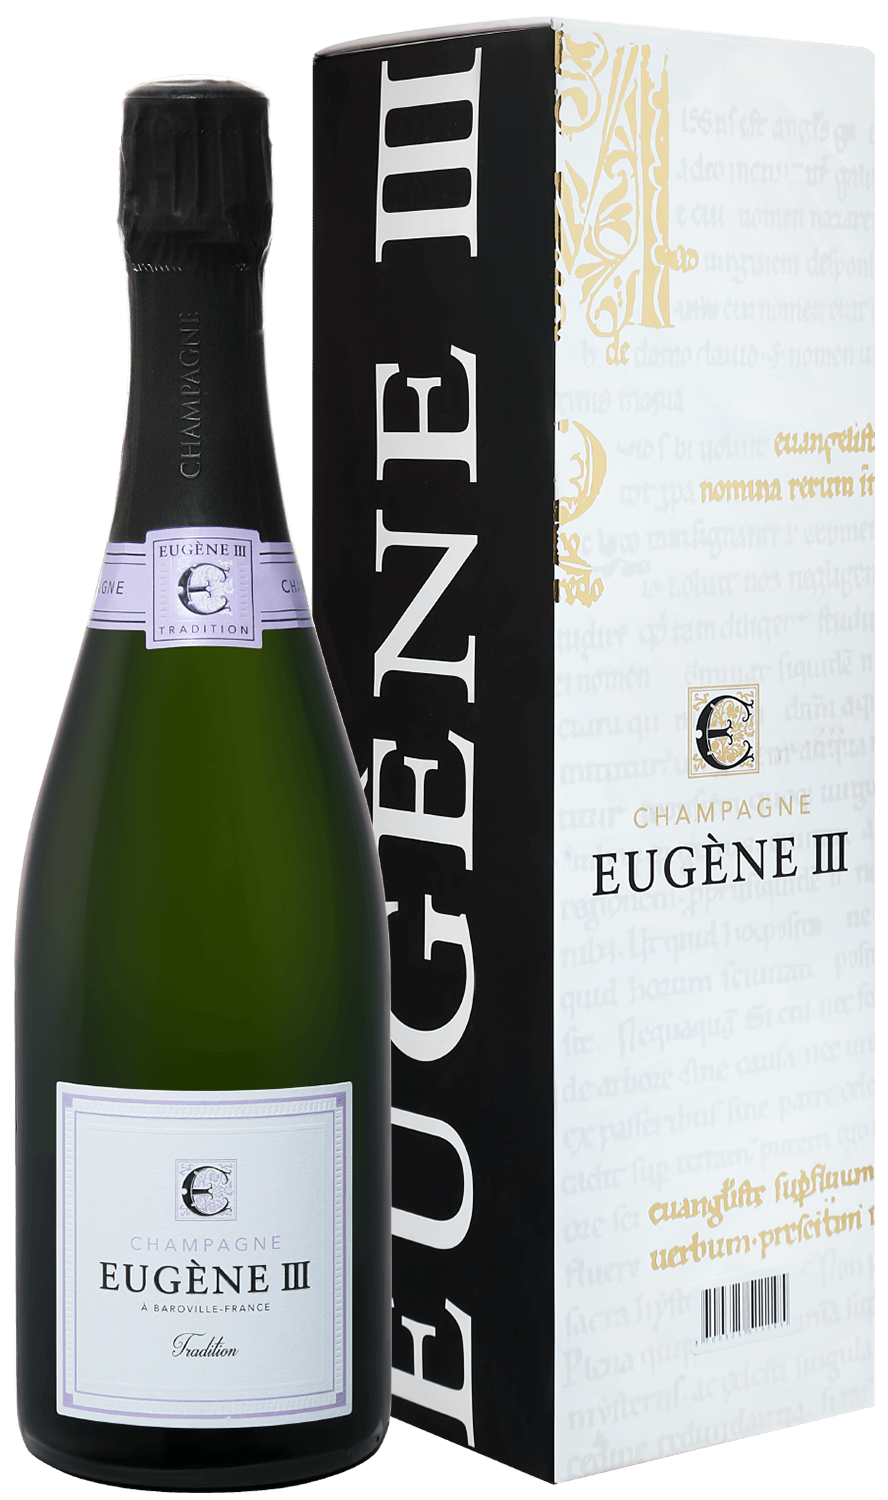 Eugene III Tradition Brut Champagne АOC Coopérative Vinicole de la Région de Baroville (gift box) eugene iii rosé brut champagne аoc coopérative vinicole de la région de baroville